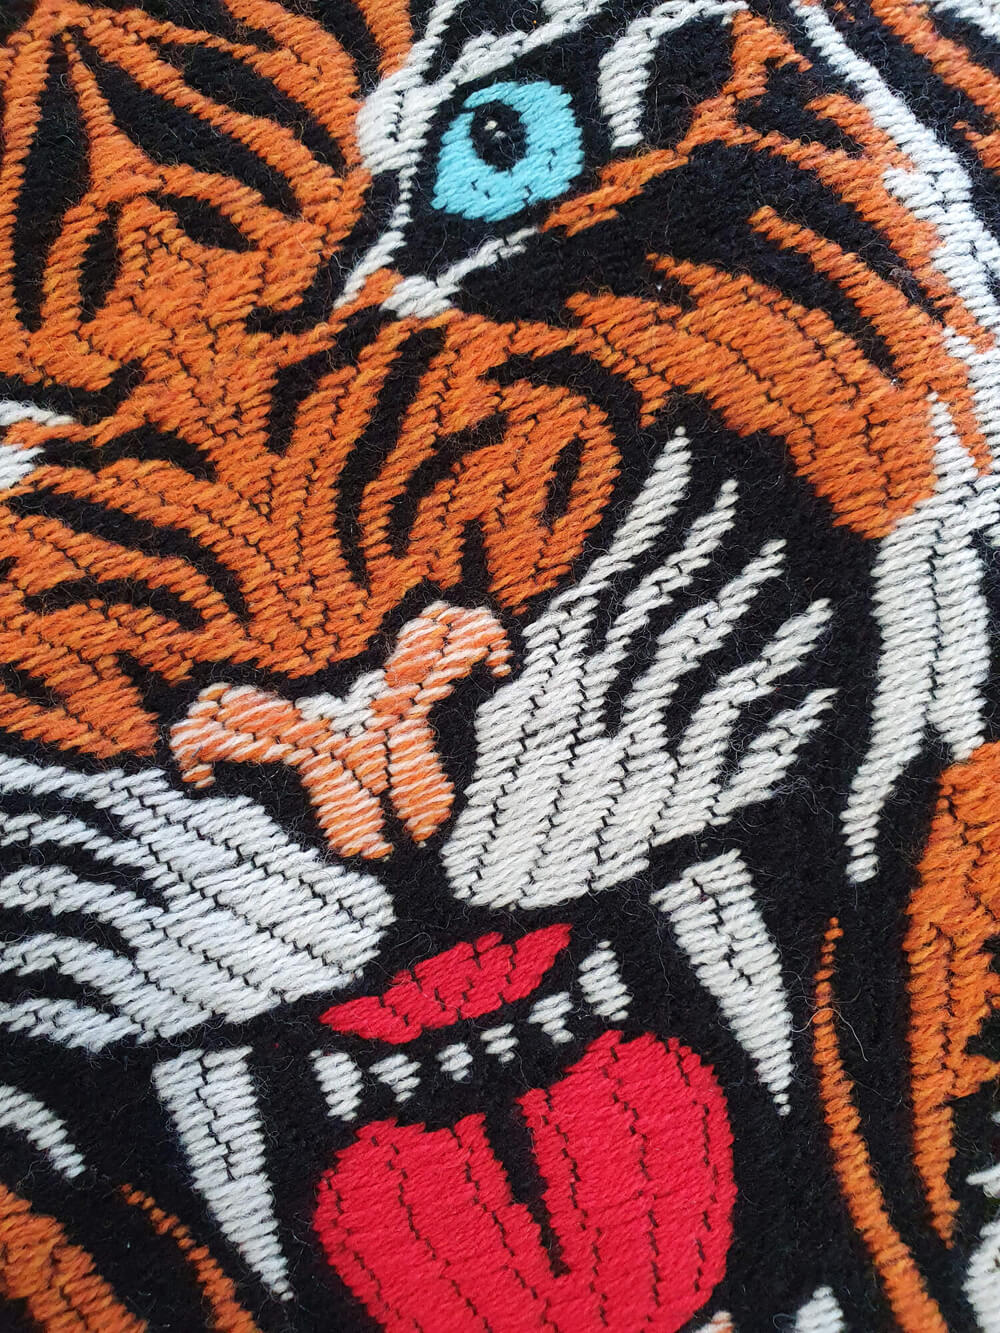 Сумка шоппер из твида с тигром, цвет Оранжевый, фото 2